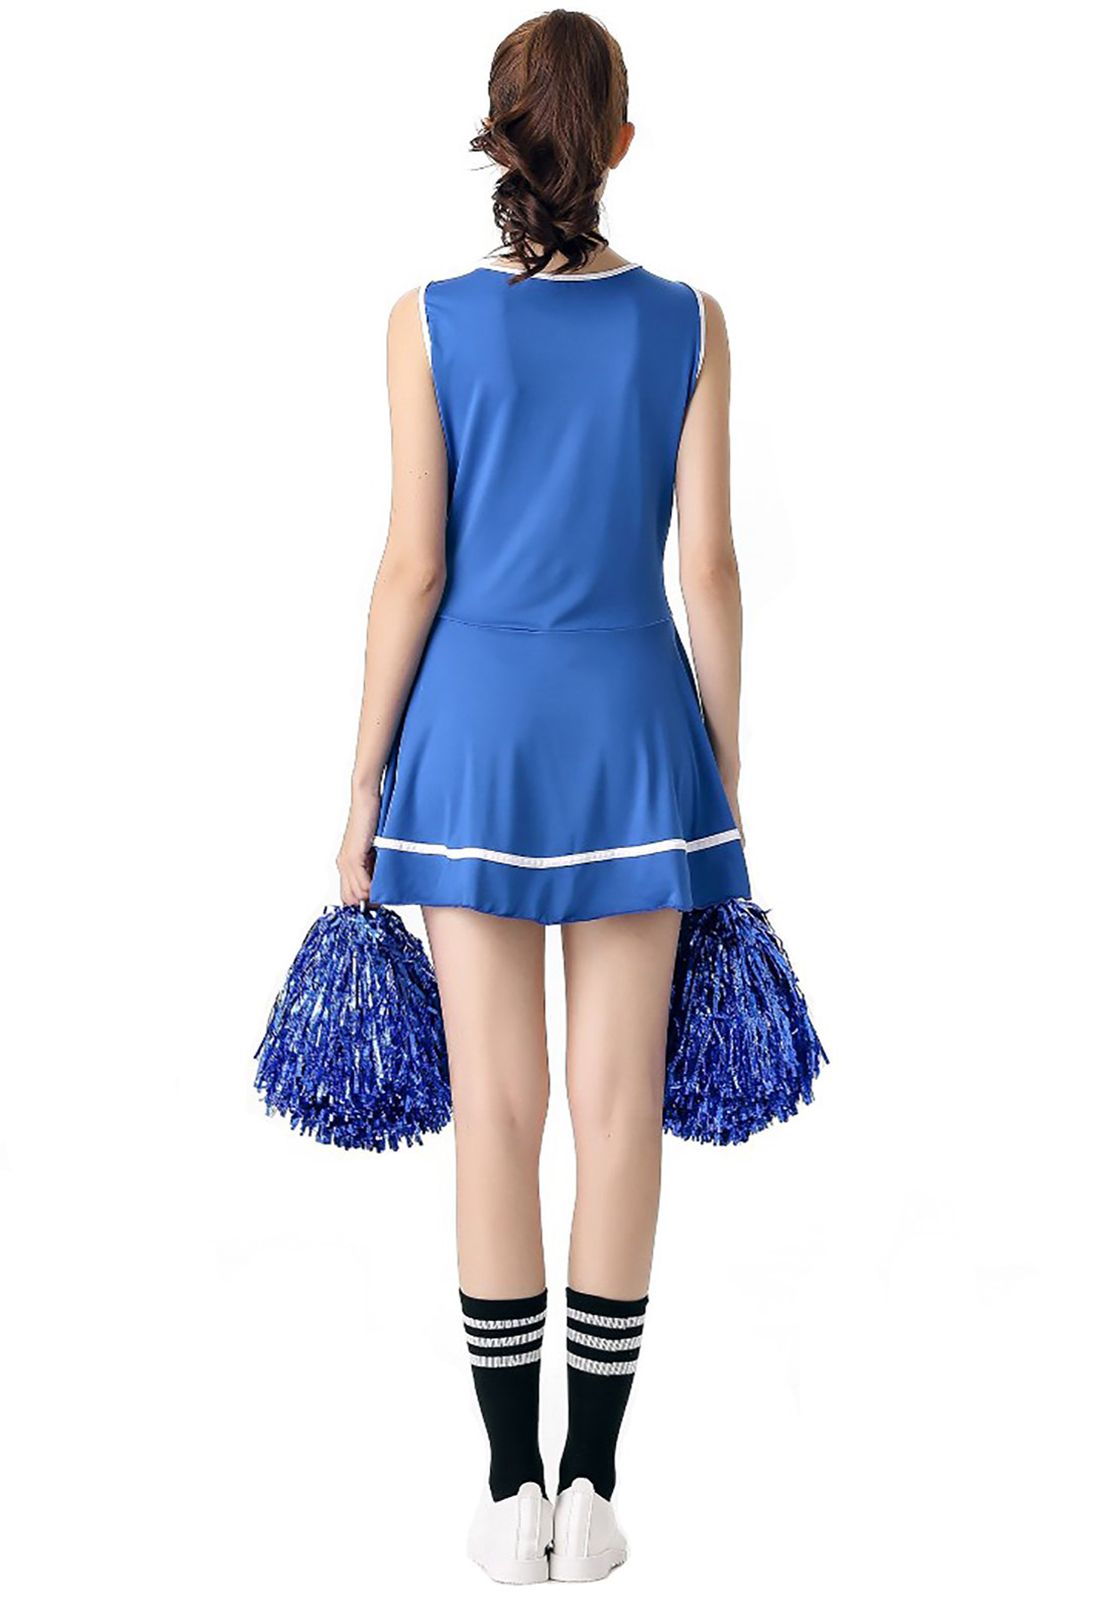 Costume de pom-pom girl bleu déguisement lycée musical uniforme de pom-pom girl sans pompon